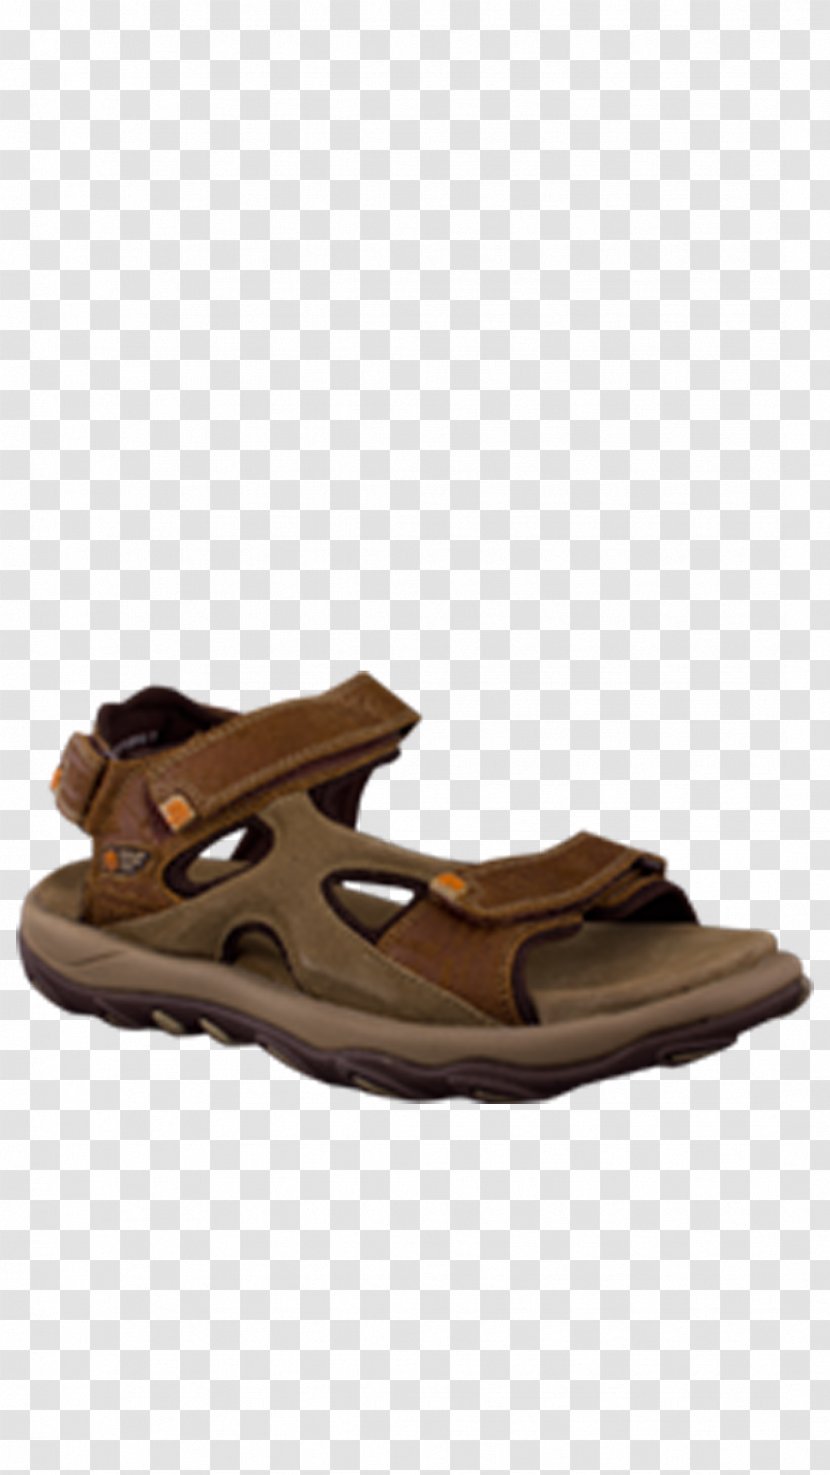 Flip-flops Woodland Brown Floater Sandals Shoe Slide - Sandal - Wiping Taste Transparent PNG